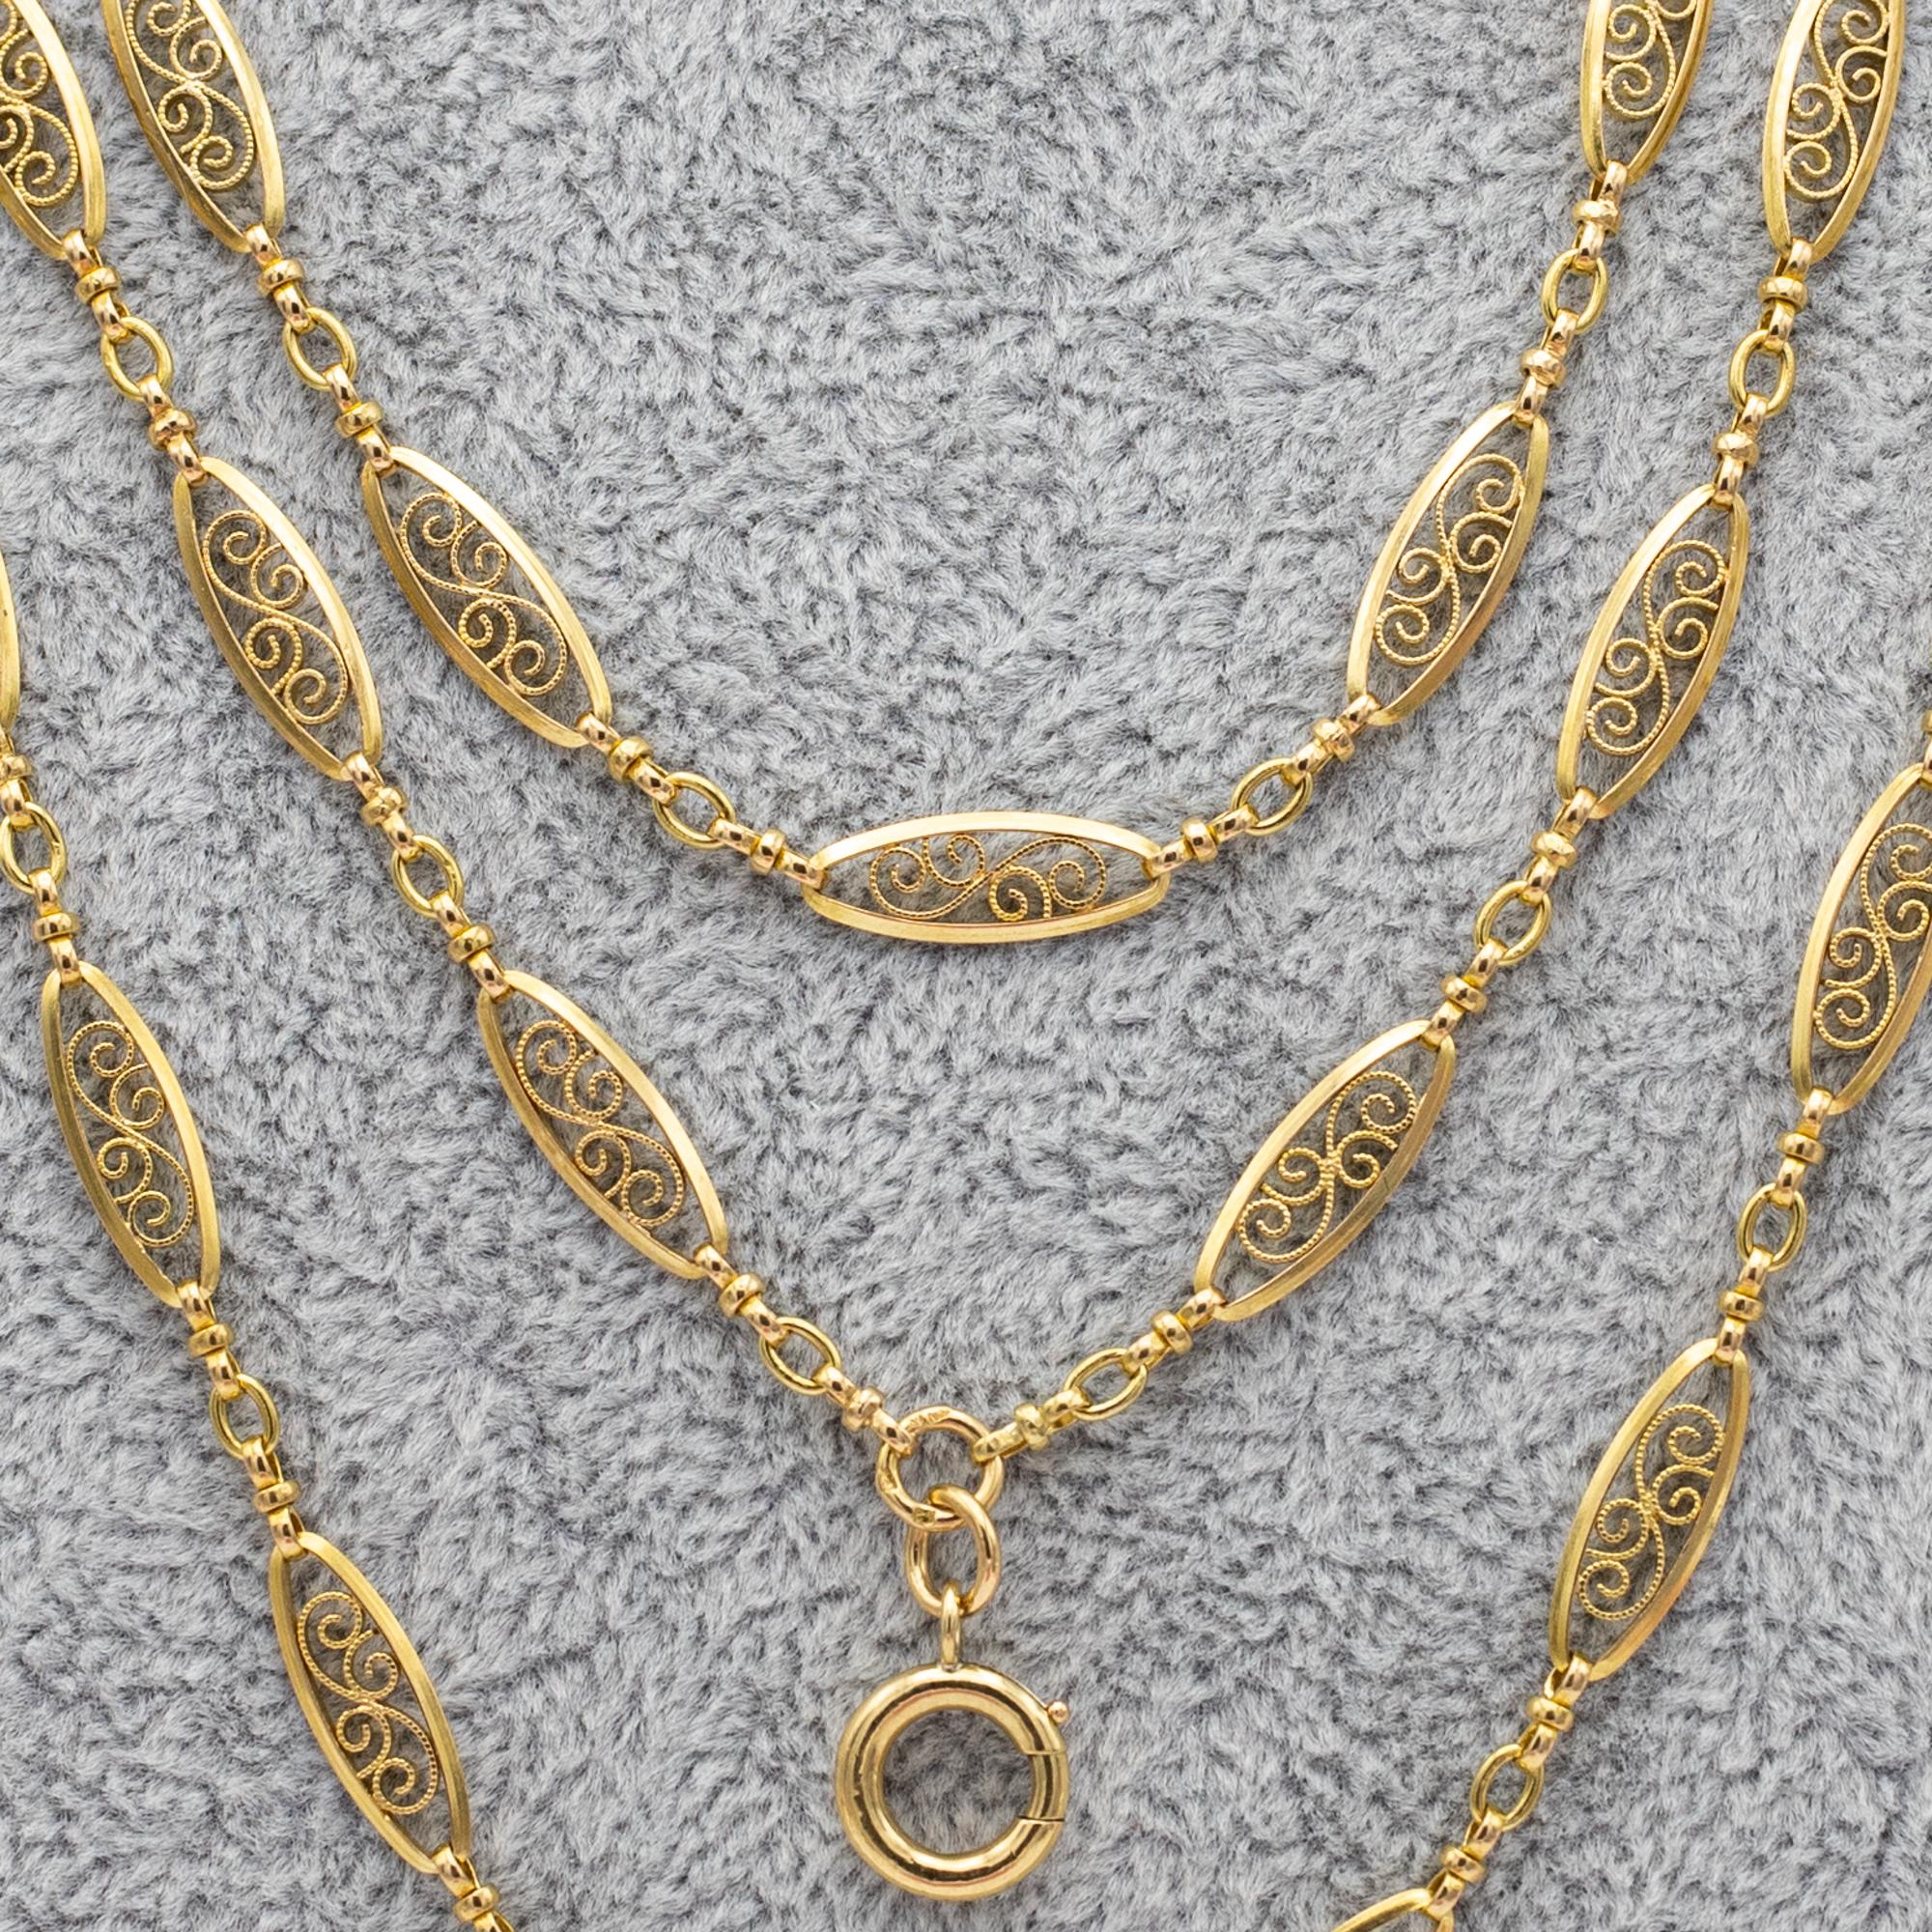 Antique 18k gold Sautoir necklace, 155cm long guard, Victorian double rope chain 5